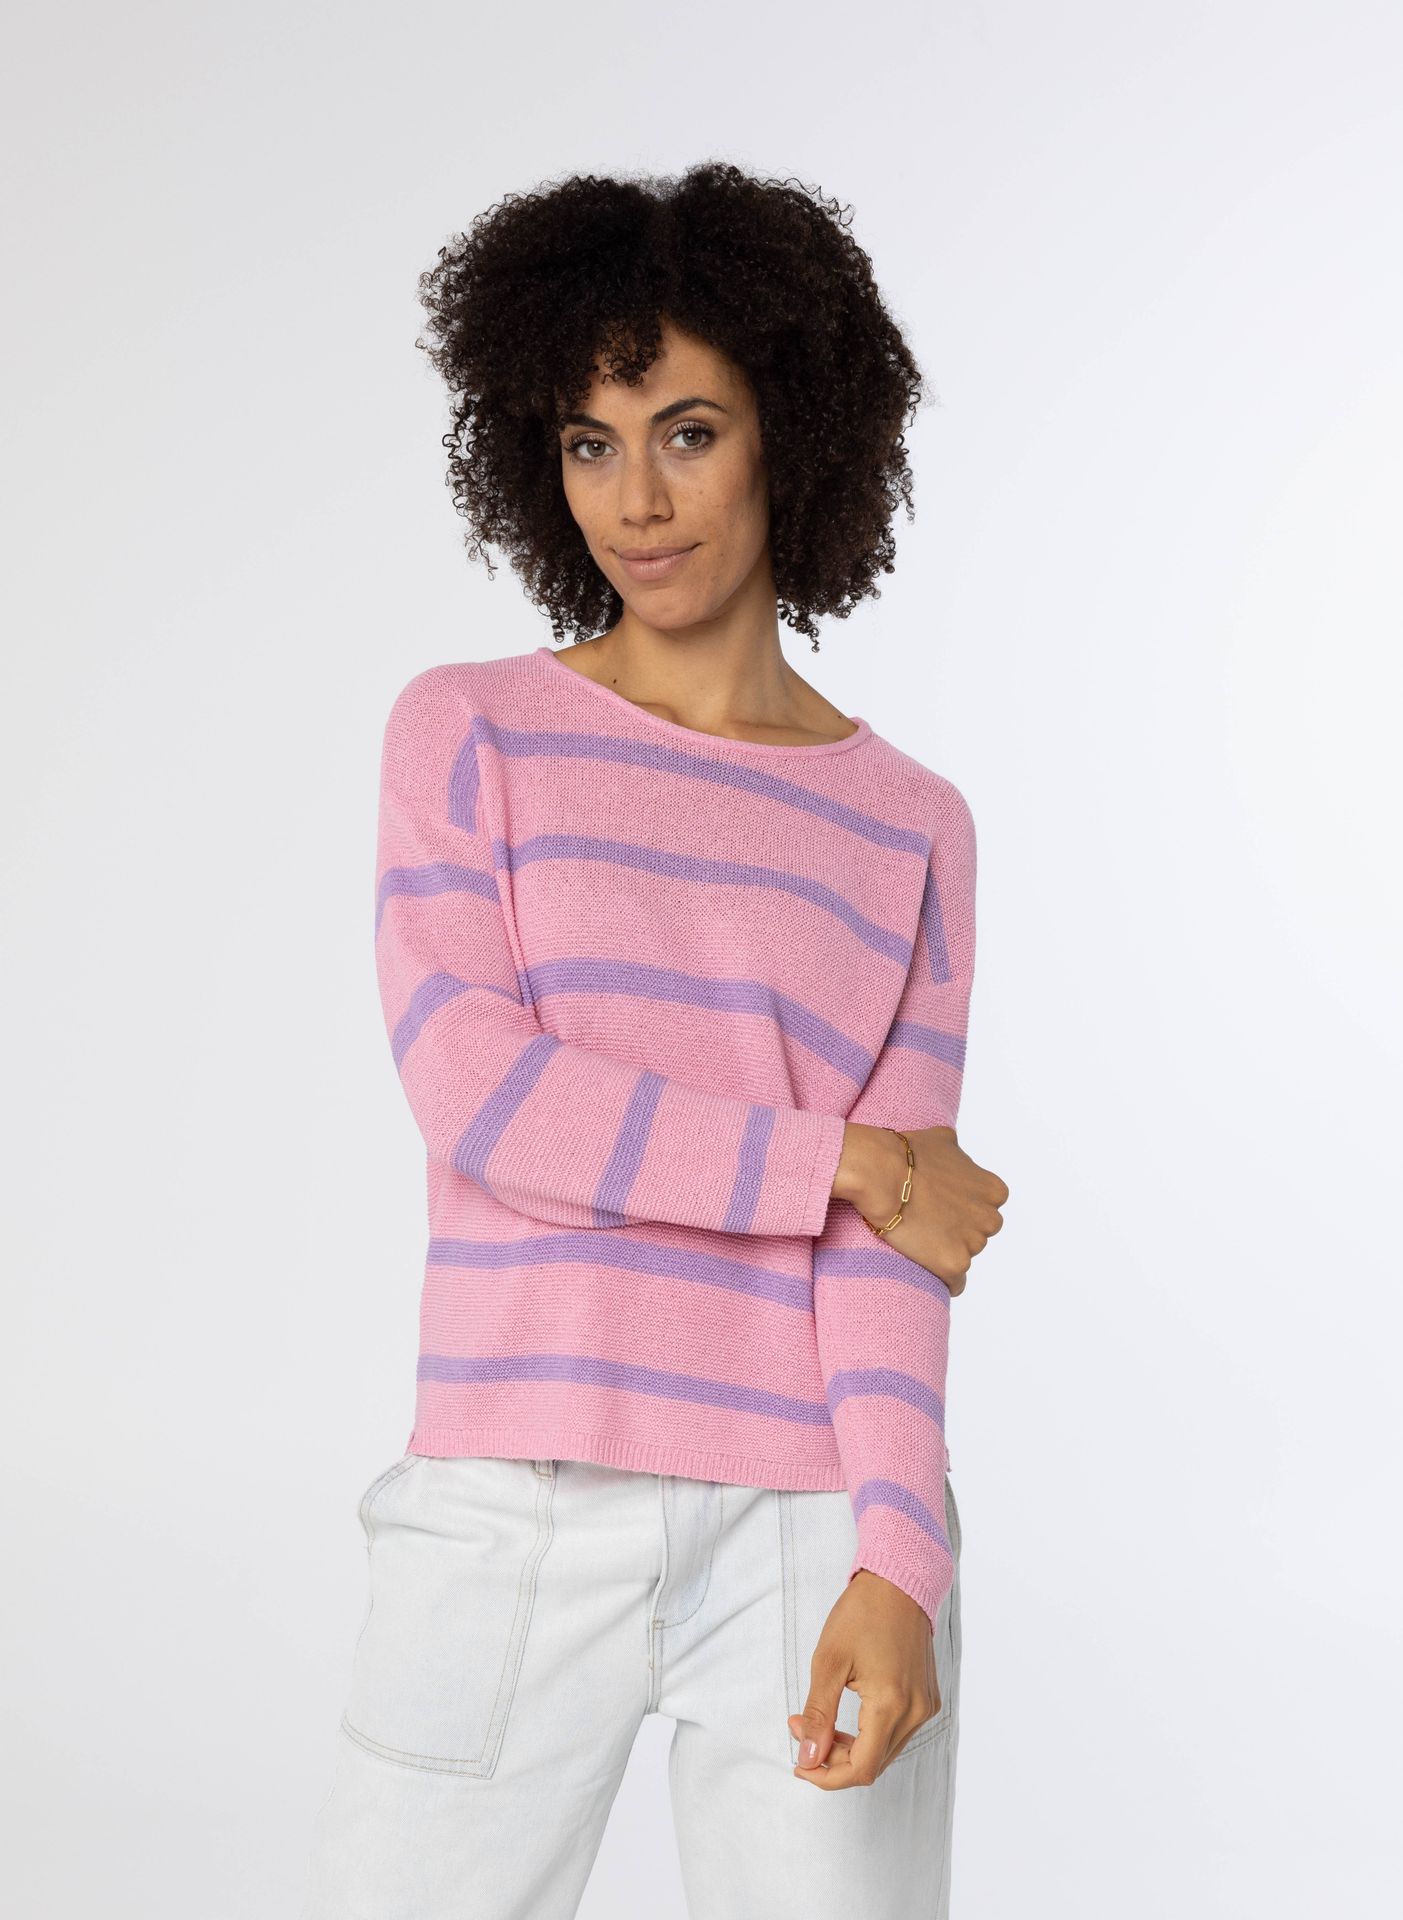 Norah Roze gebreide shirt pink 213713-900